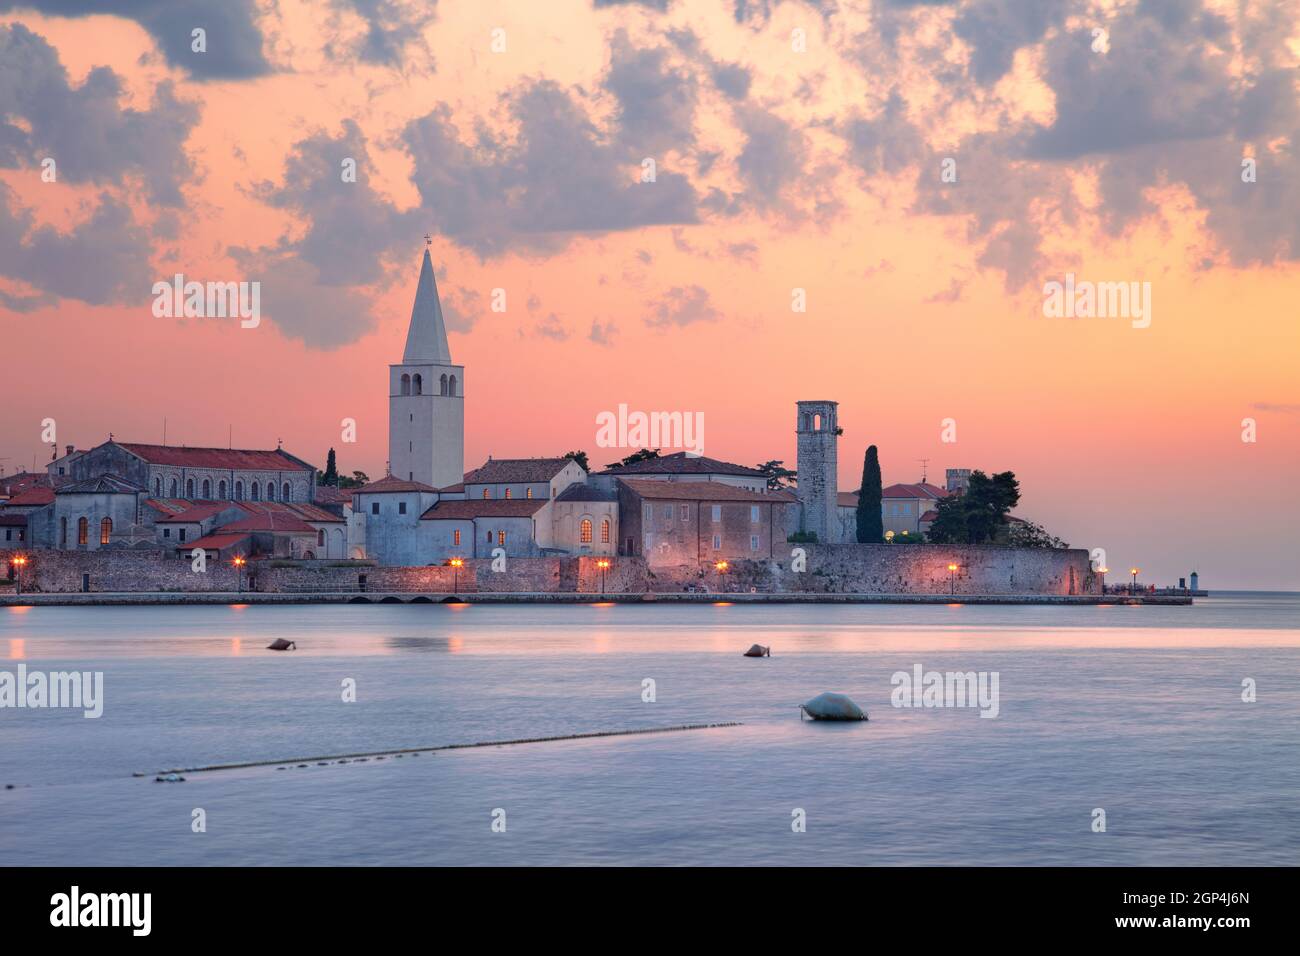 Porec, Kroatien. Stadtbild von Porec, Kroatien mit der Basilika von Phrasius, die sich bei Sonnenuntergang auf der istrischen Halbinsel befindet. Stockfoto